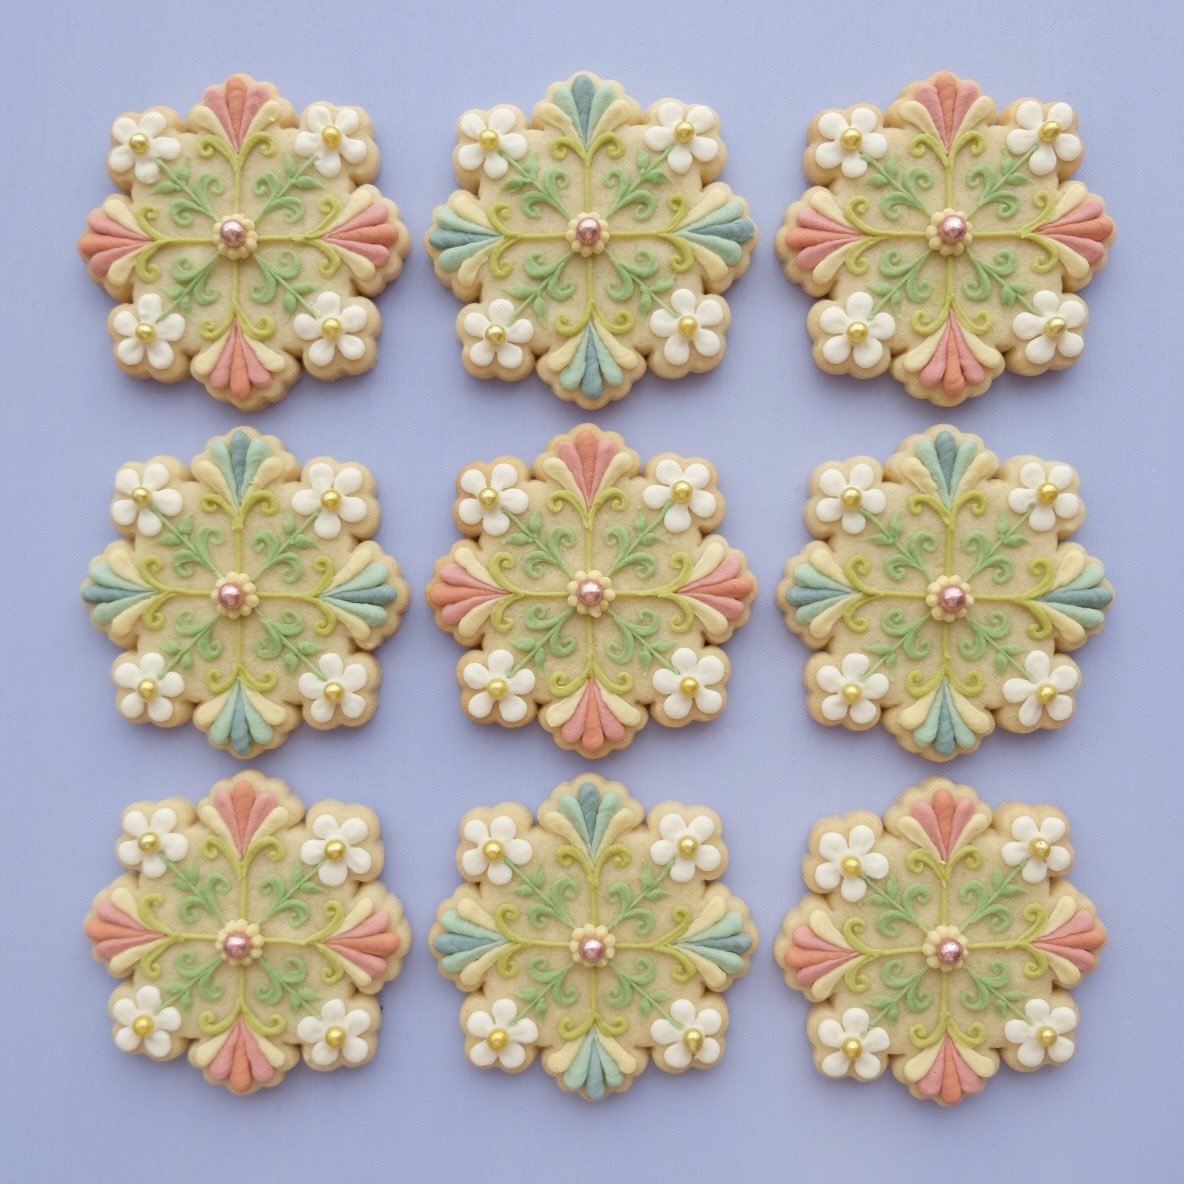 ✥ Flower tile cookies ✥